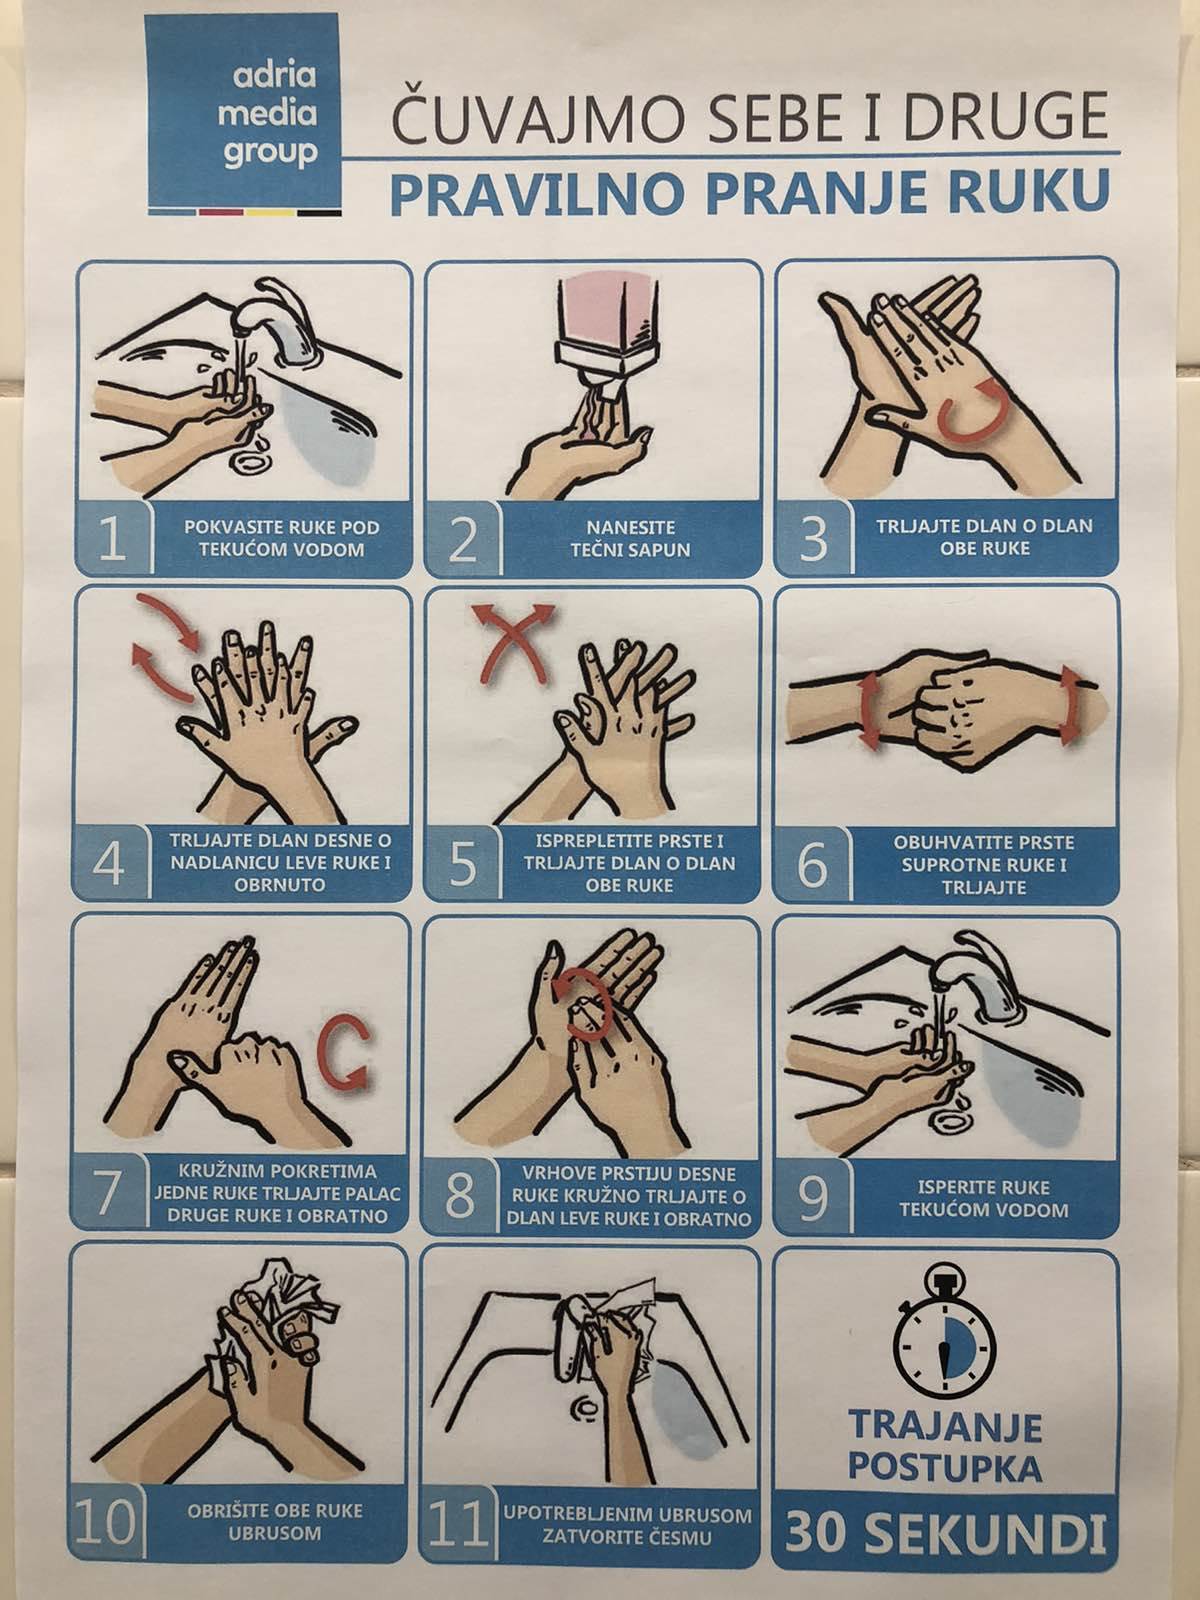  Korona virus u Srbiji uputstvo za pranje ruku 